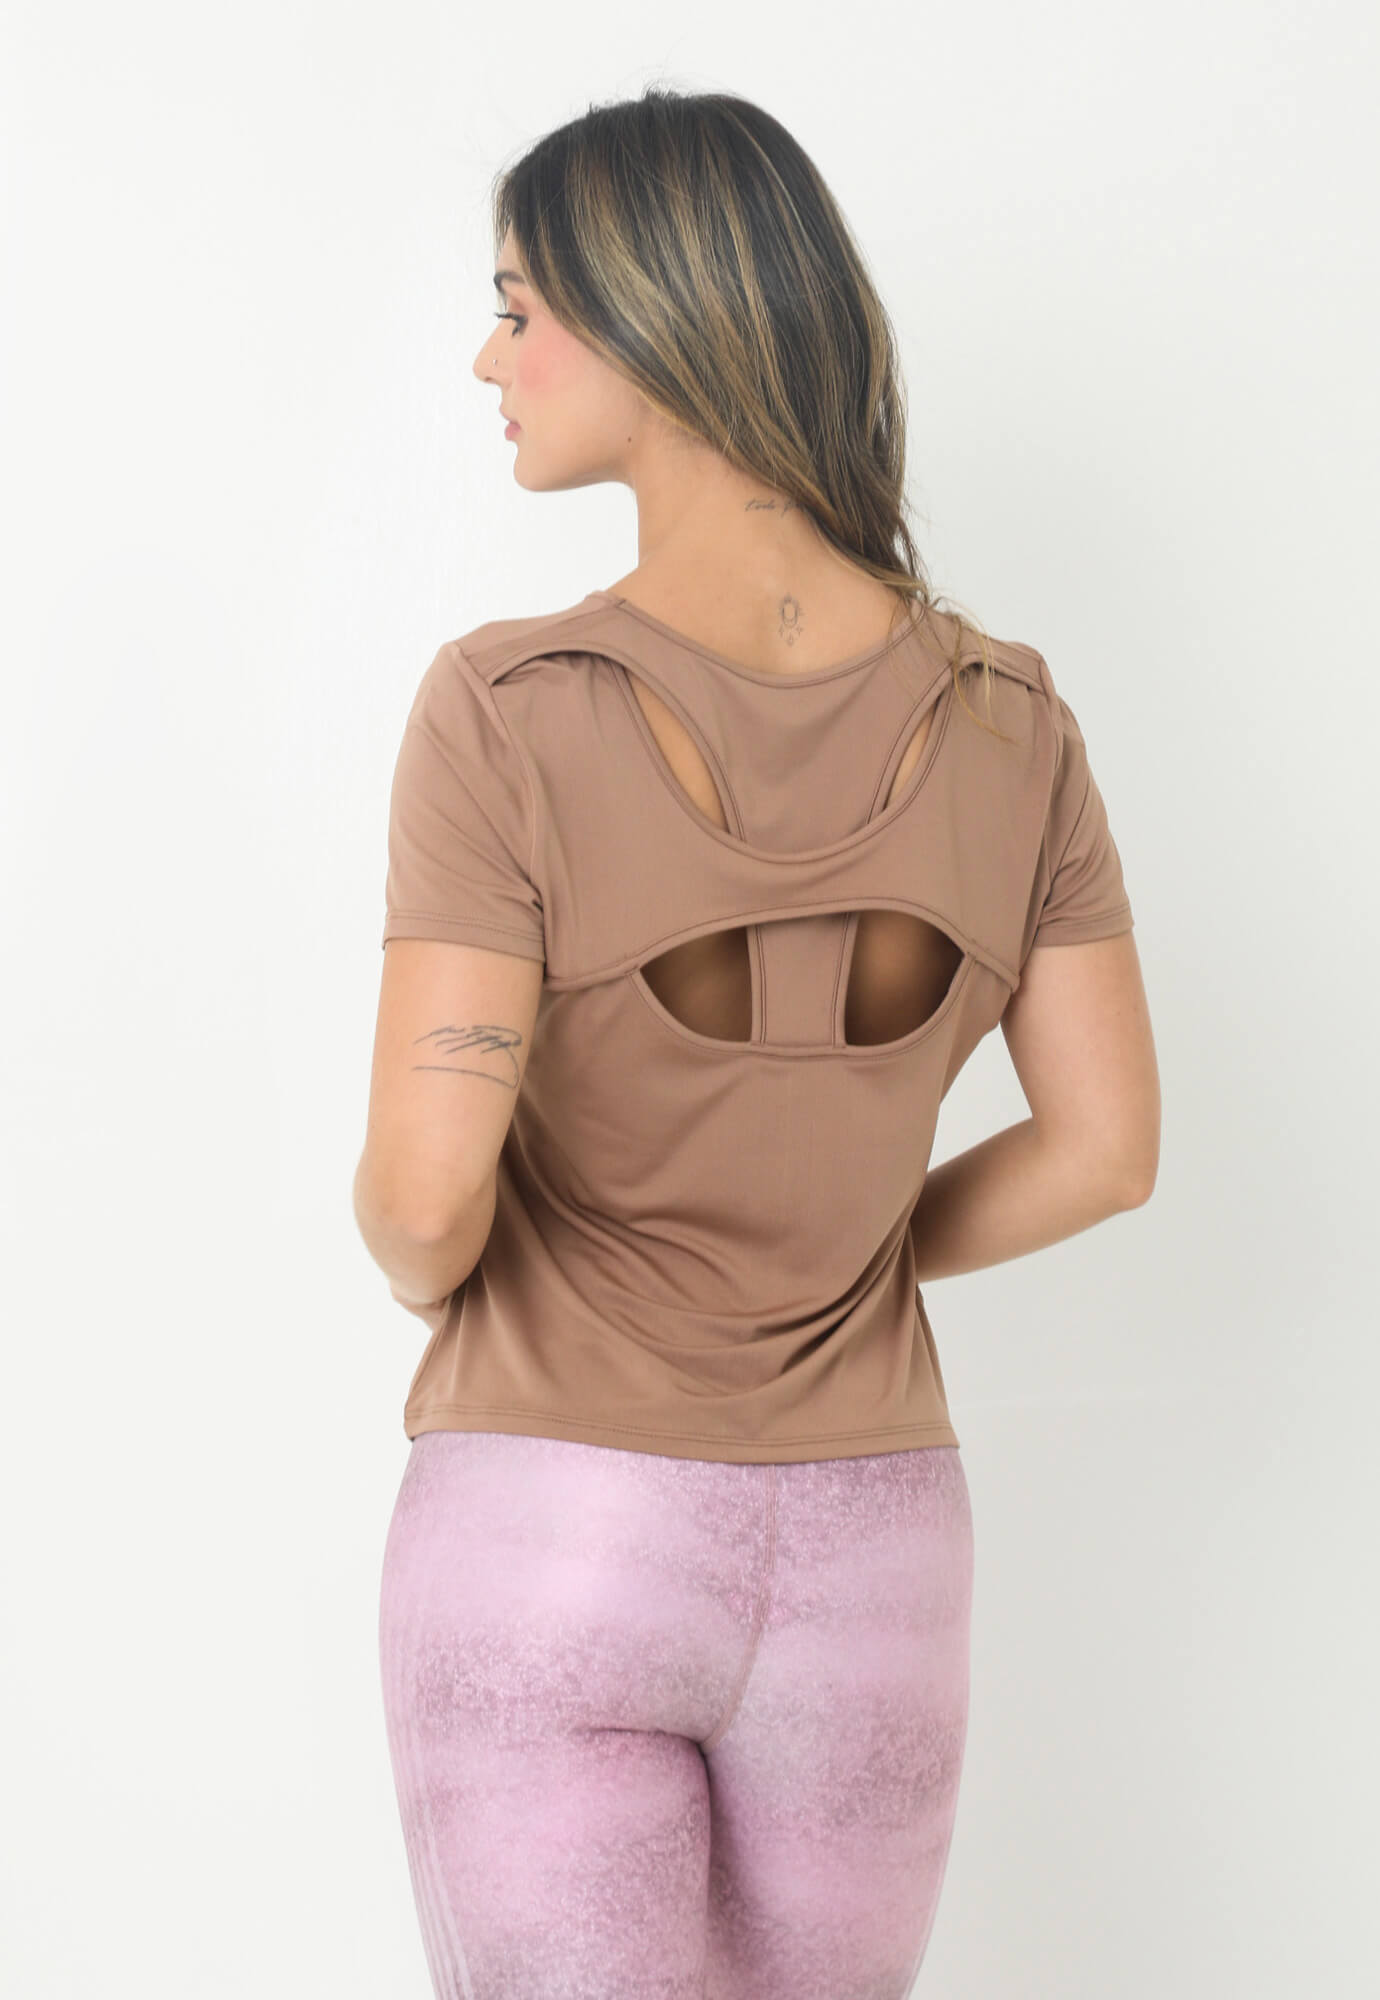 Camiseta deportiva café manga corta con abertura y corte en espalda para mujer